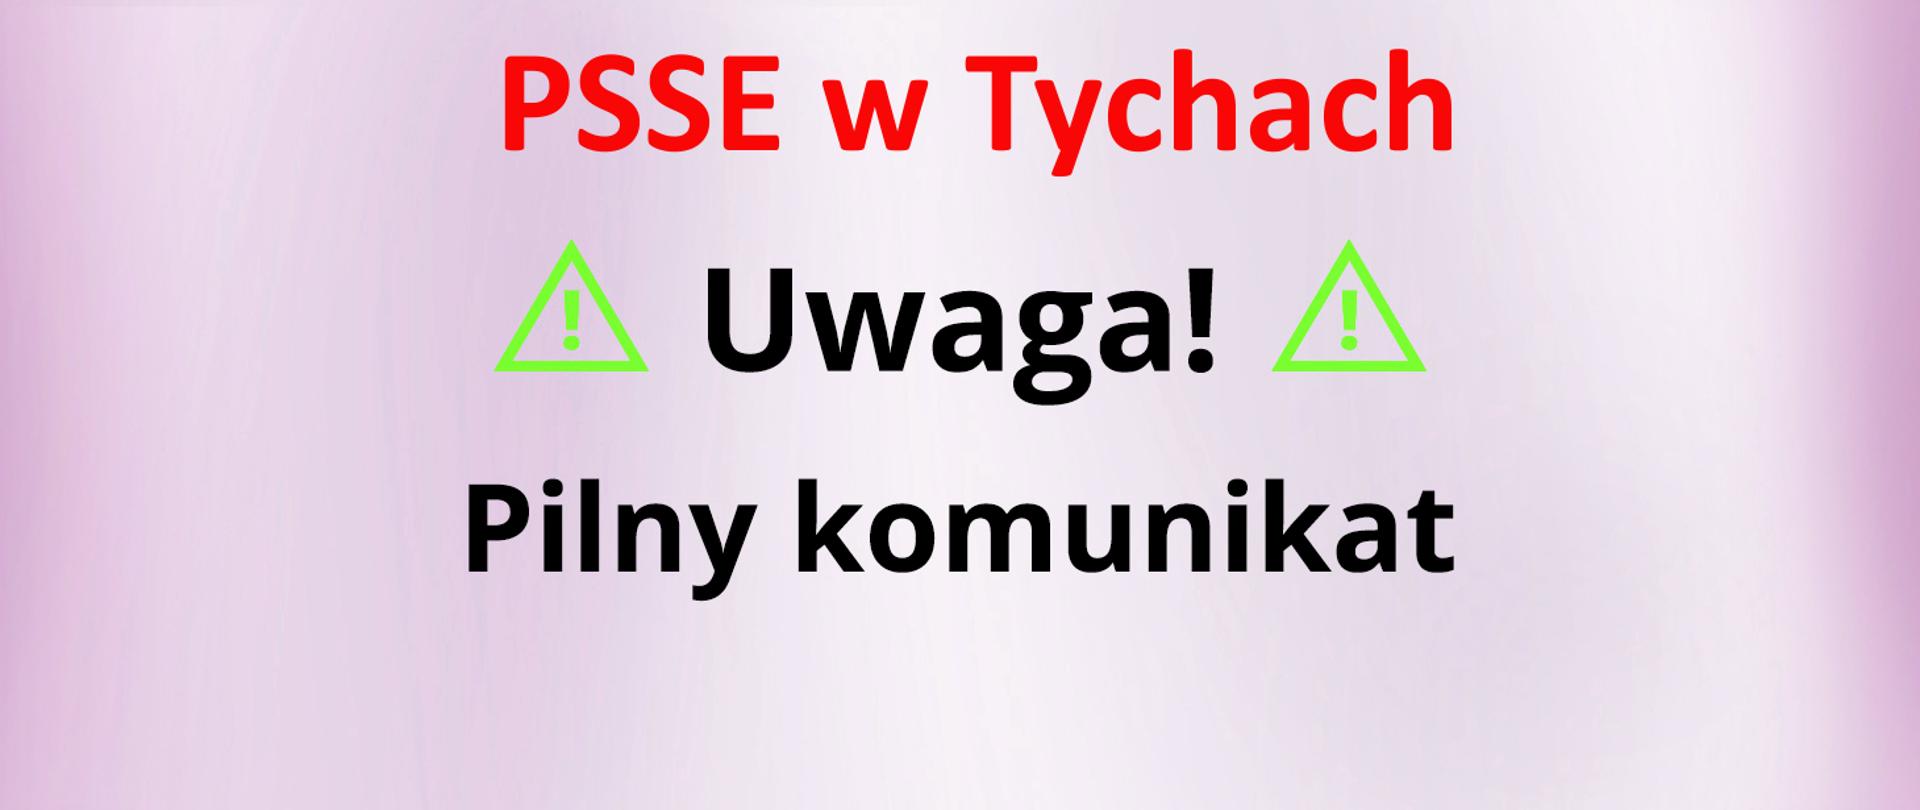 Pilny komunikat PSSE w Tychach